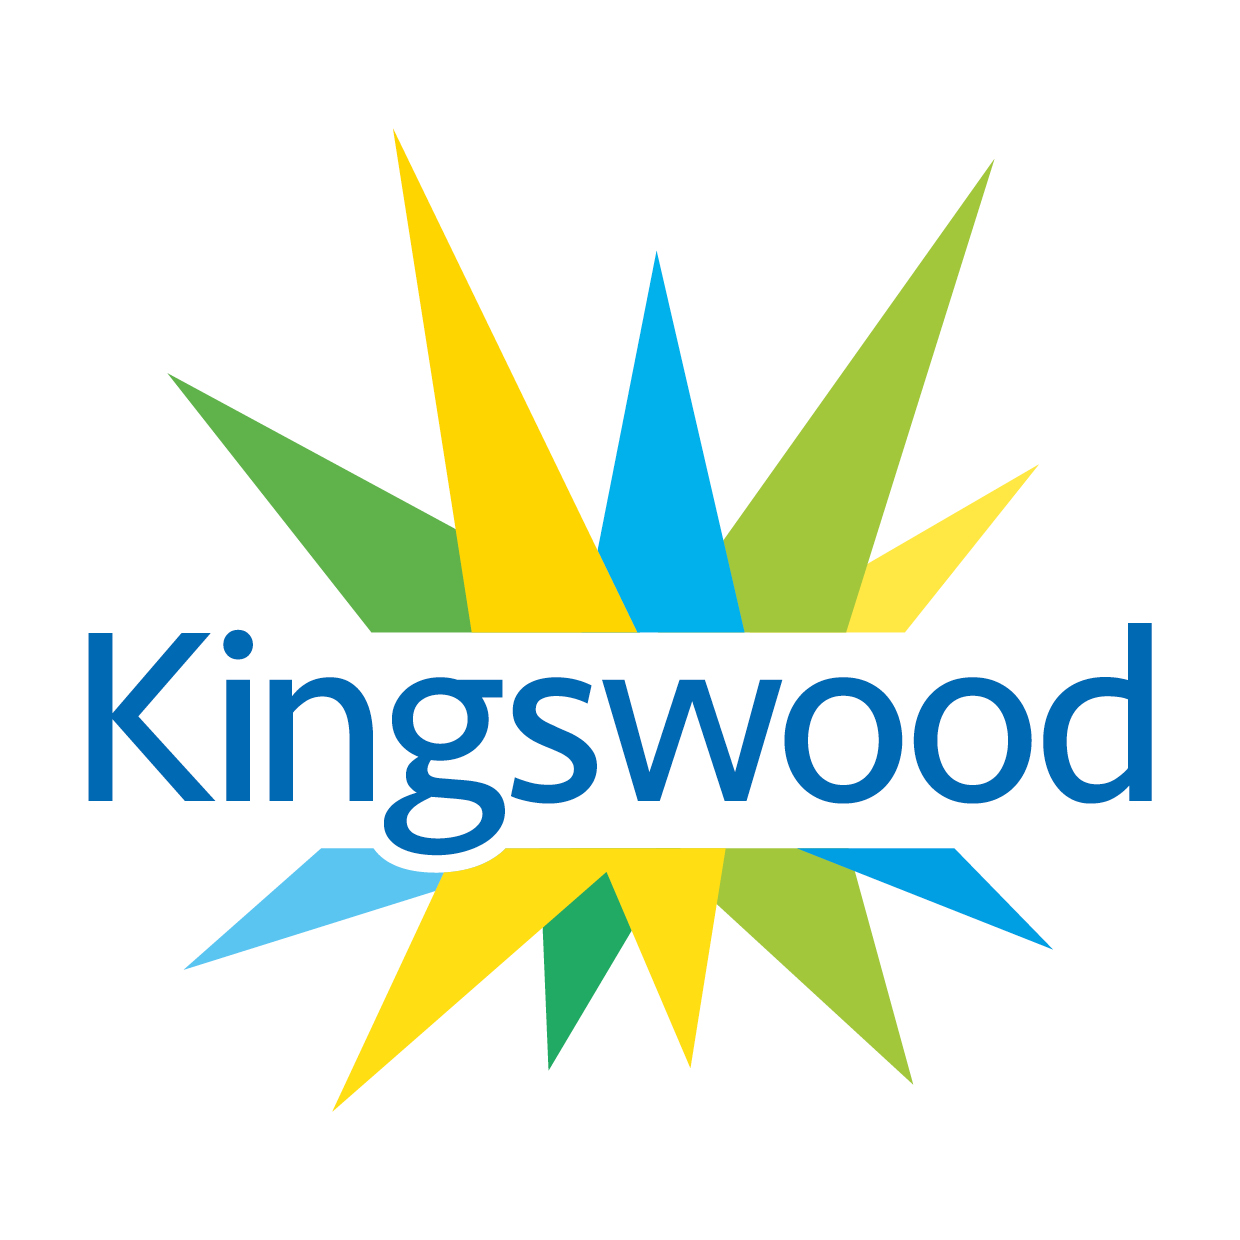 Kingswood - Logo Square.jpg